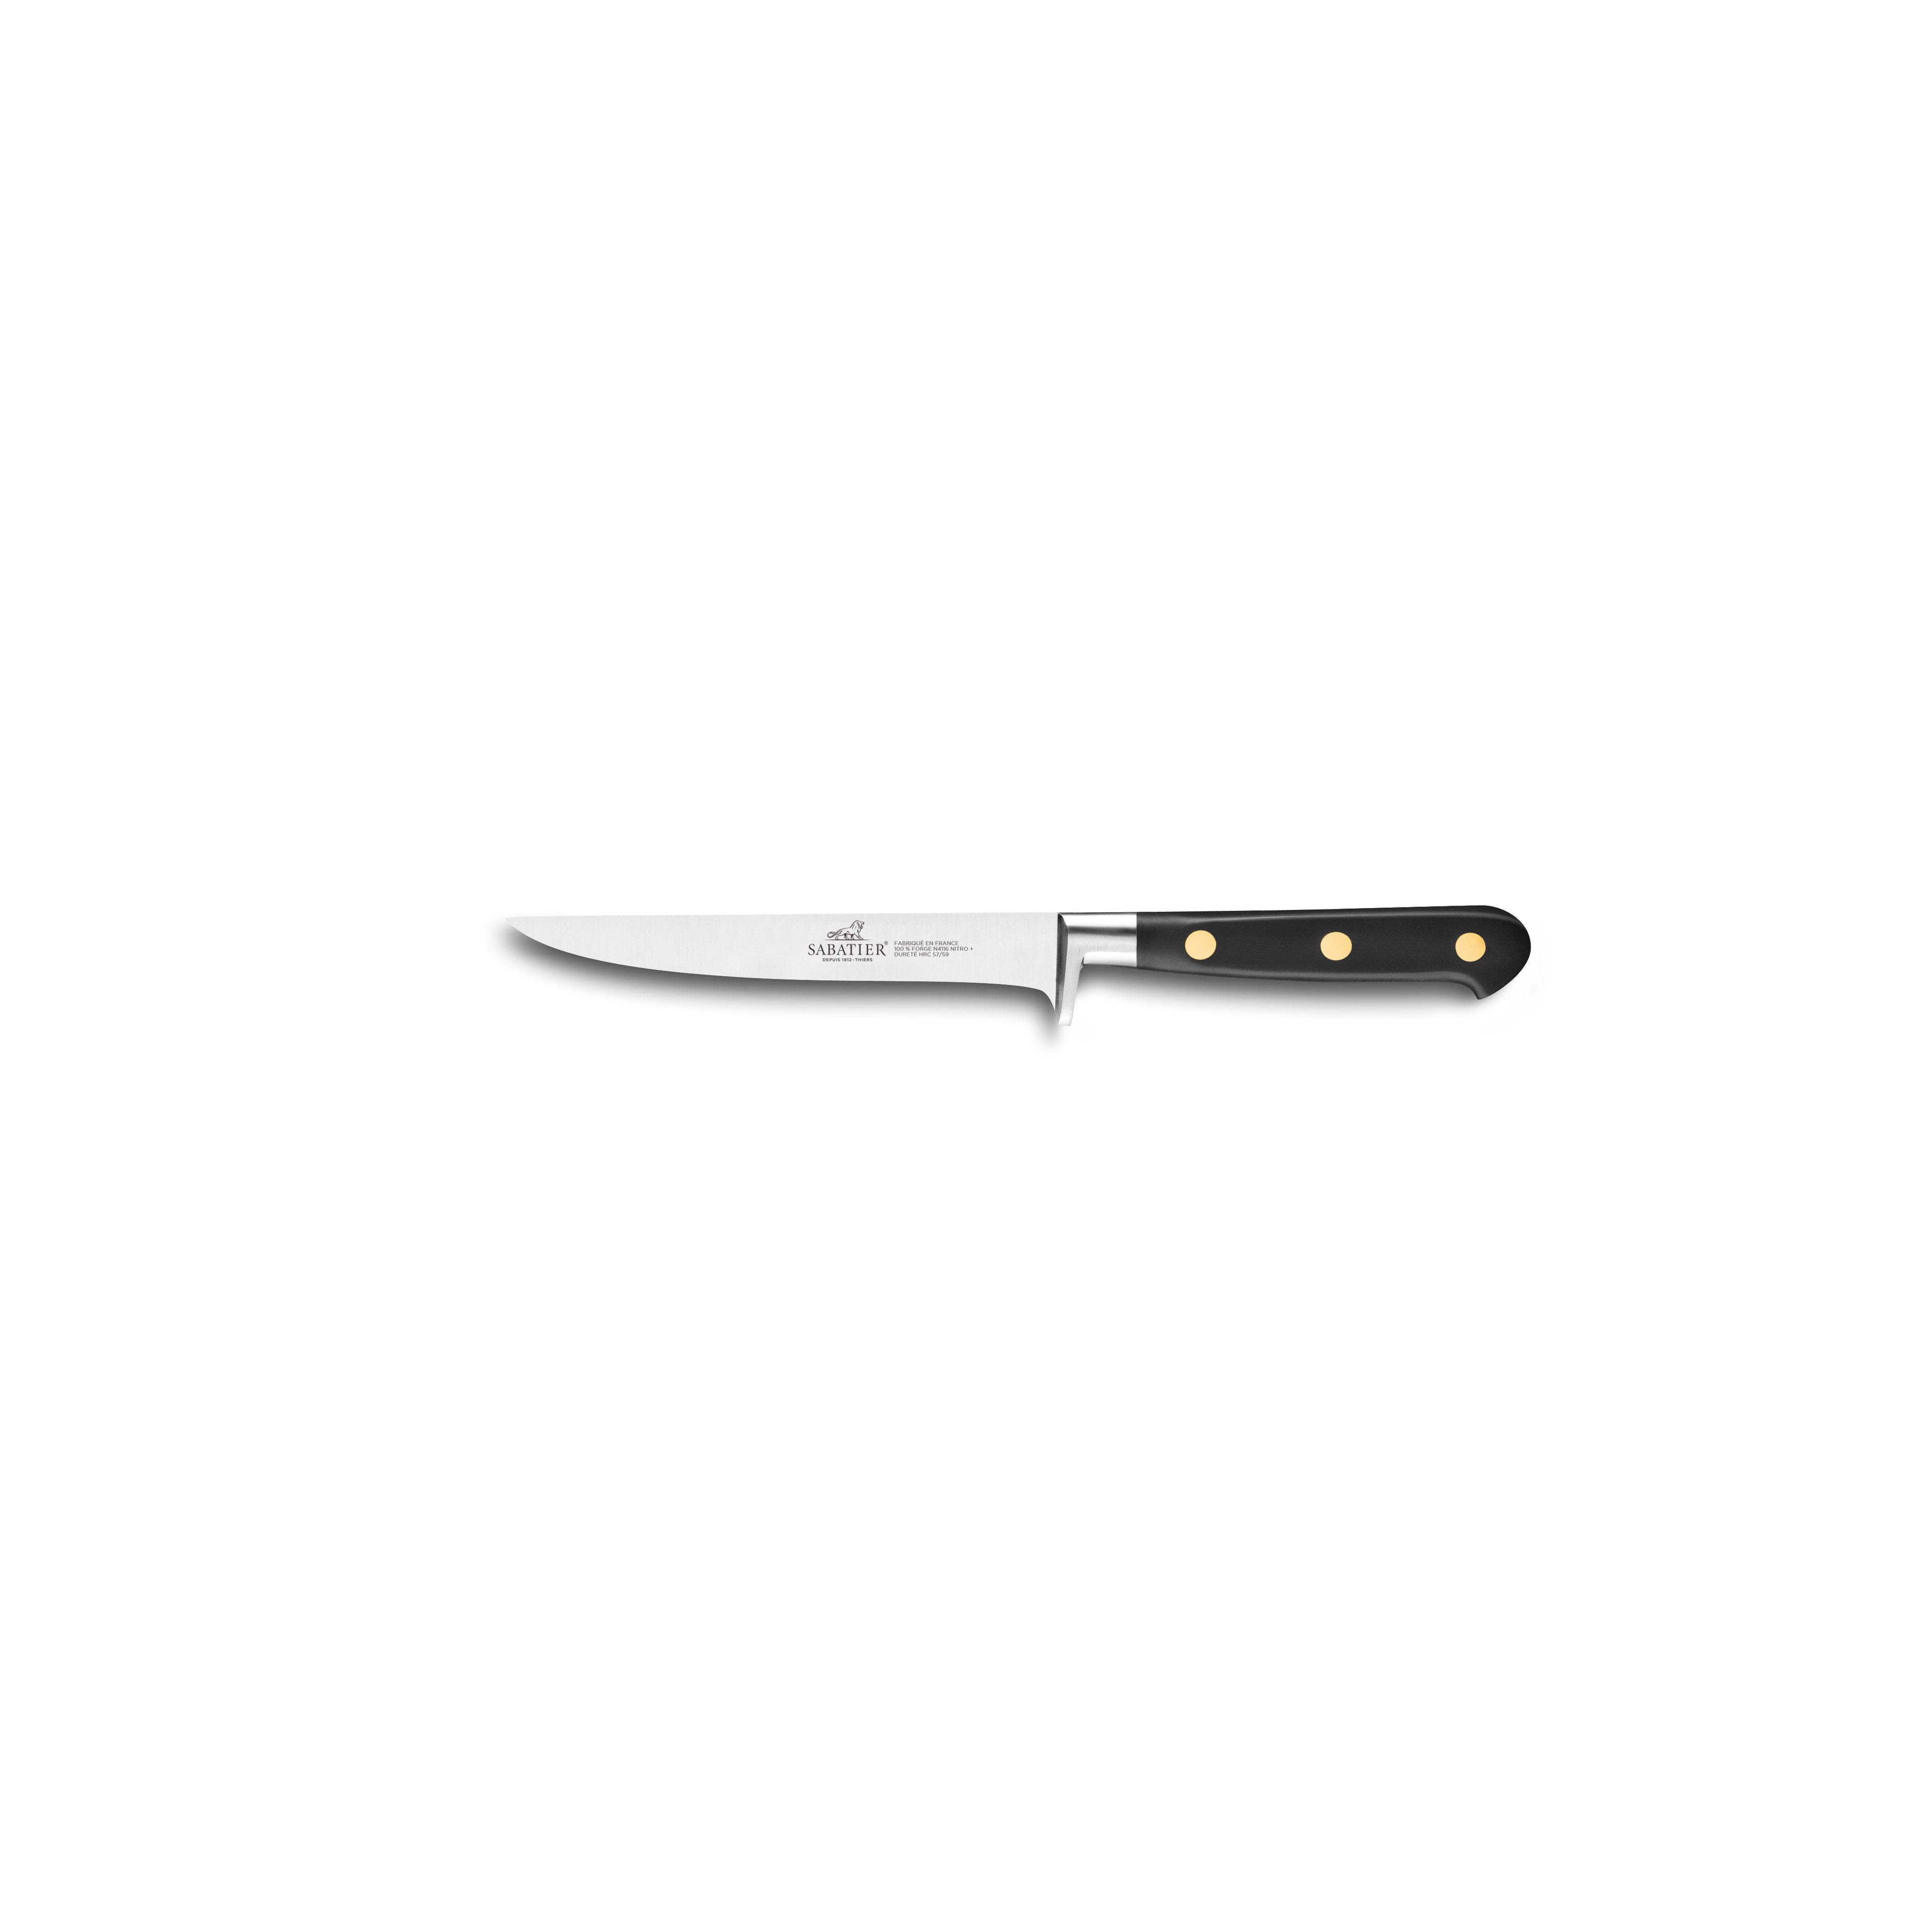 Lion Sabatier Boning Knife 13cm - Ideal Brass